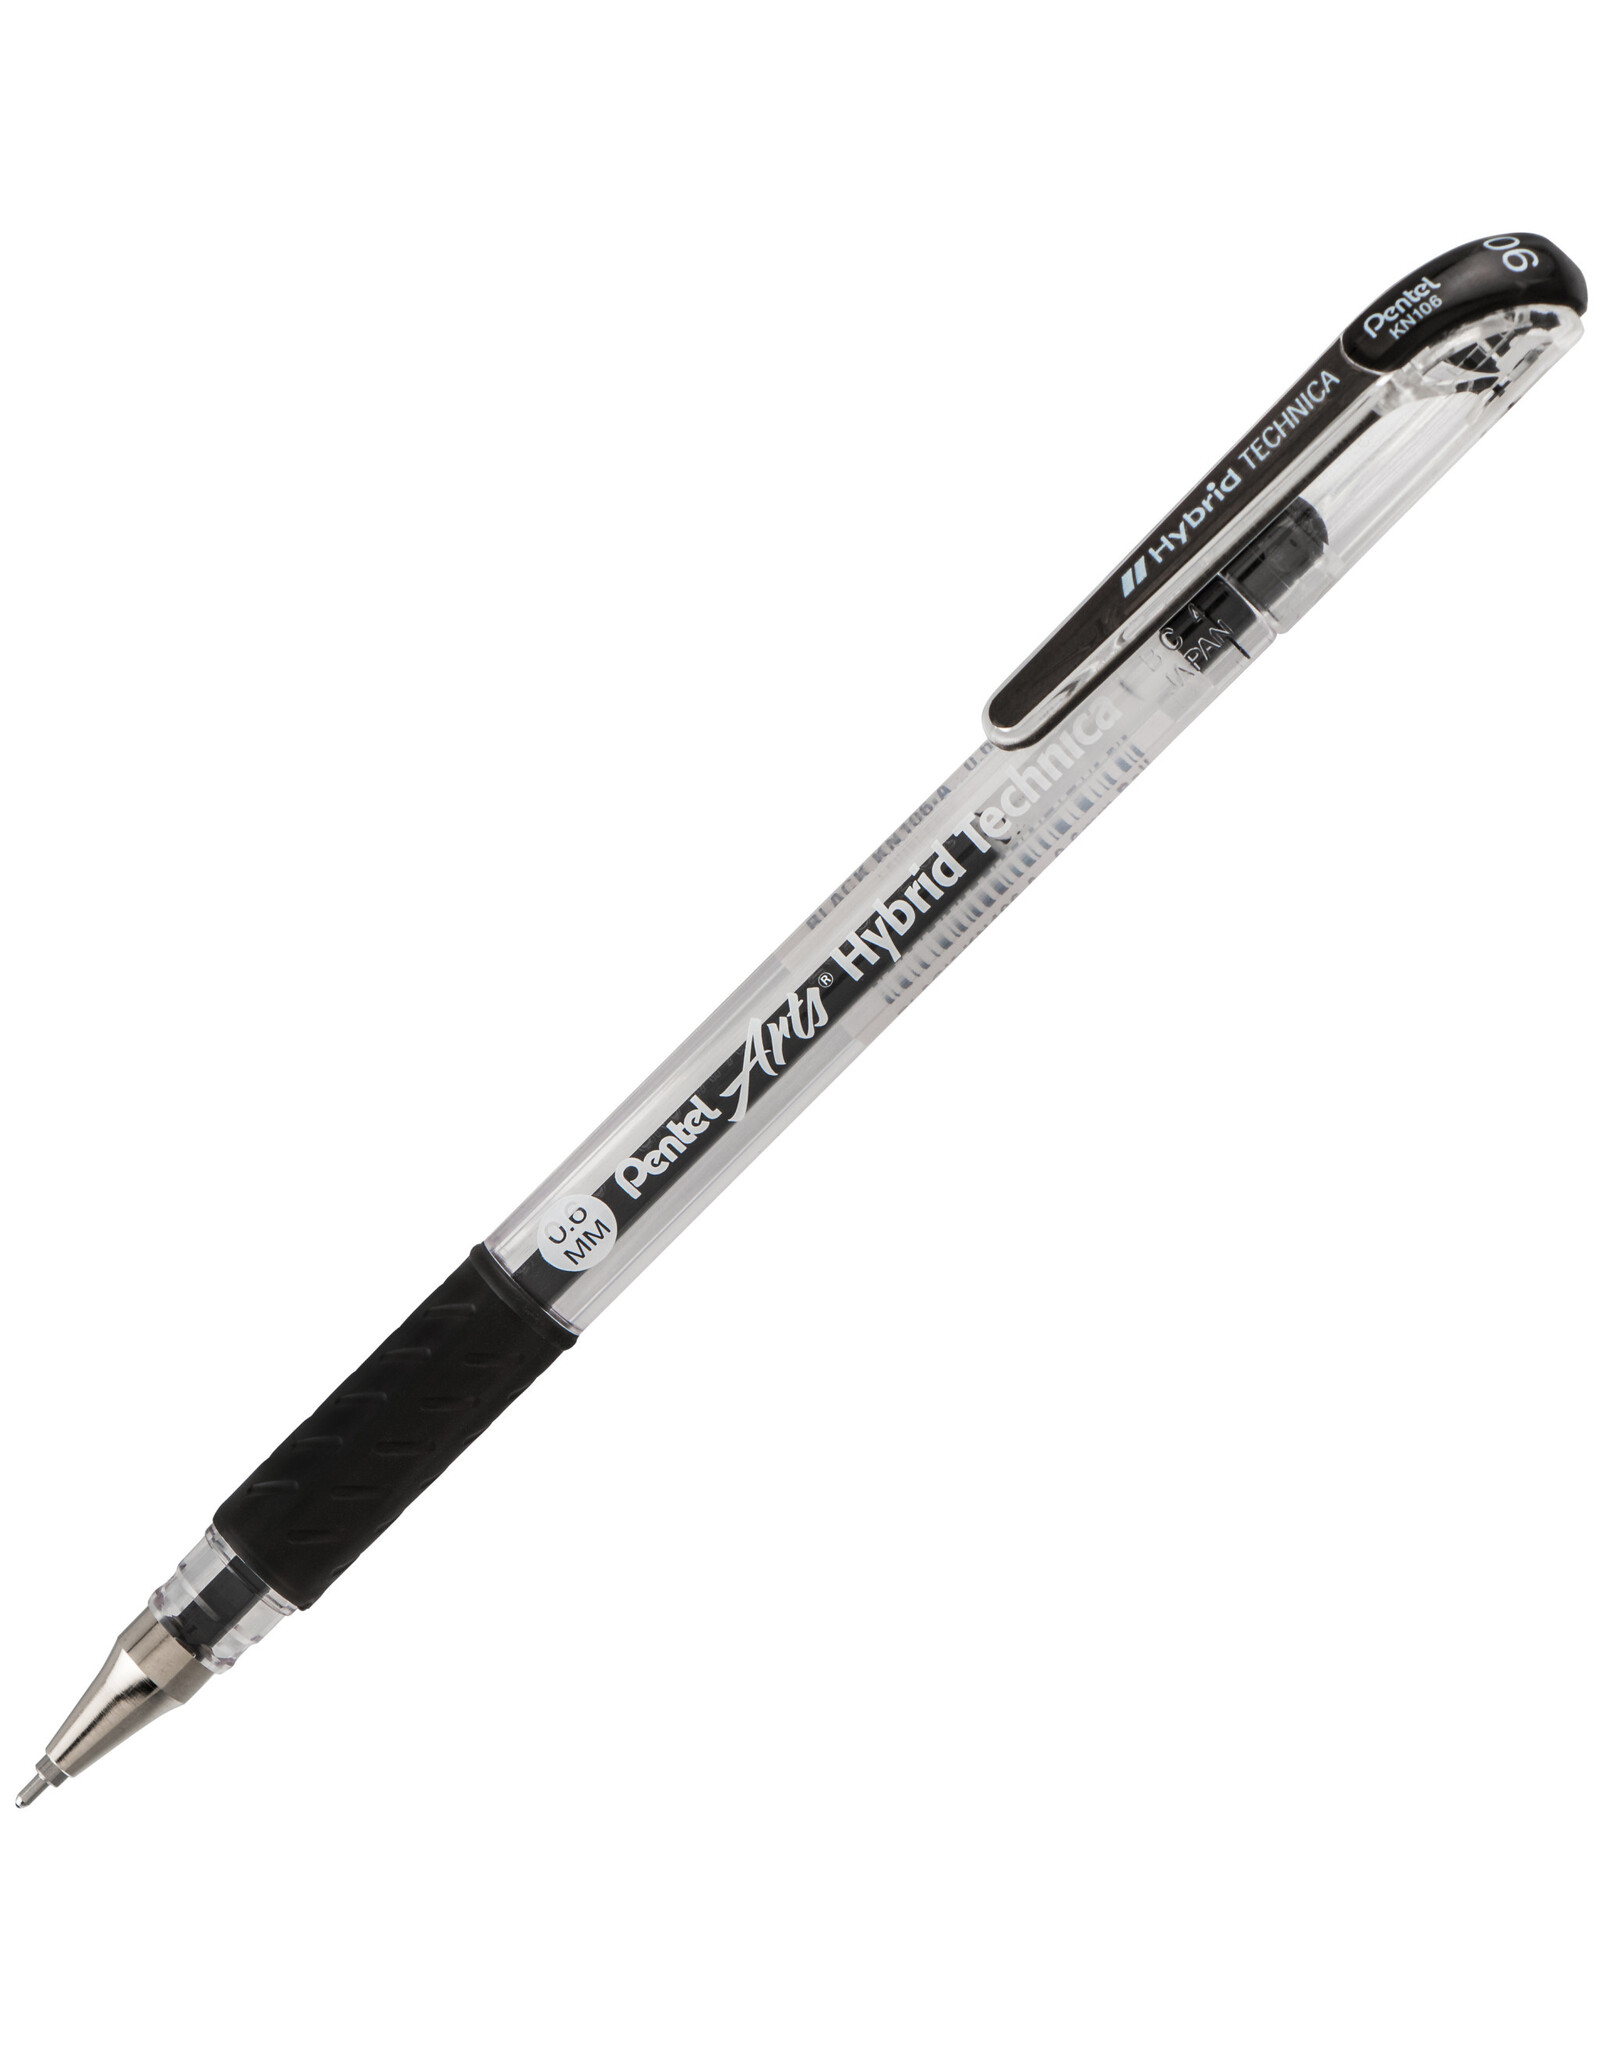 Pentel Pentel Arts Hybrid Technica Gel Pen, Black, 0.6mm